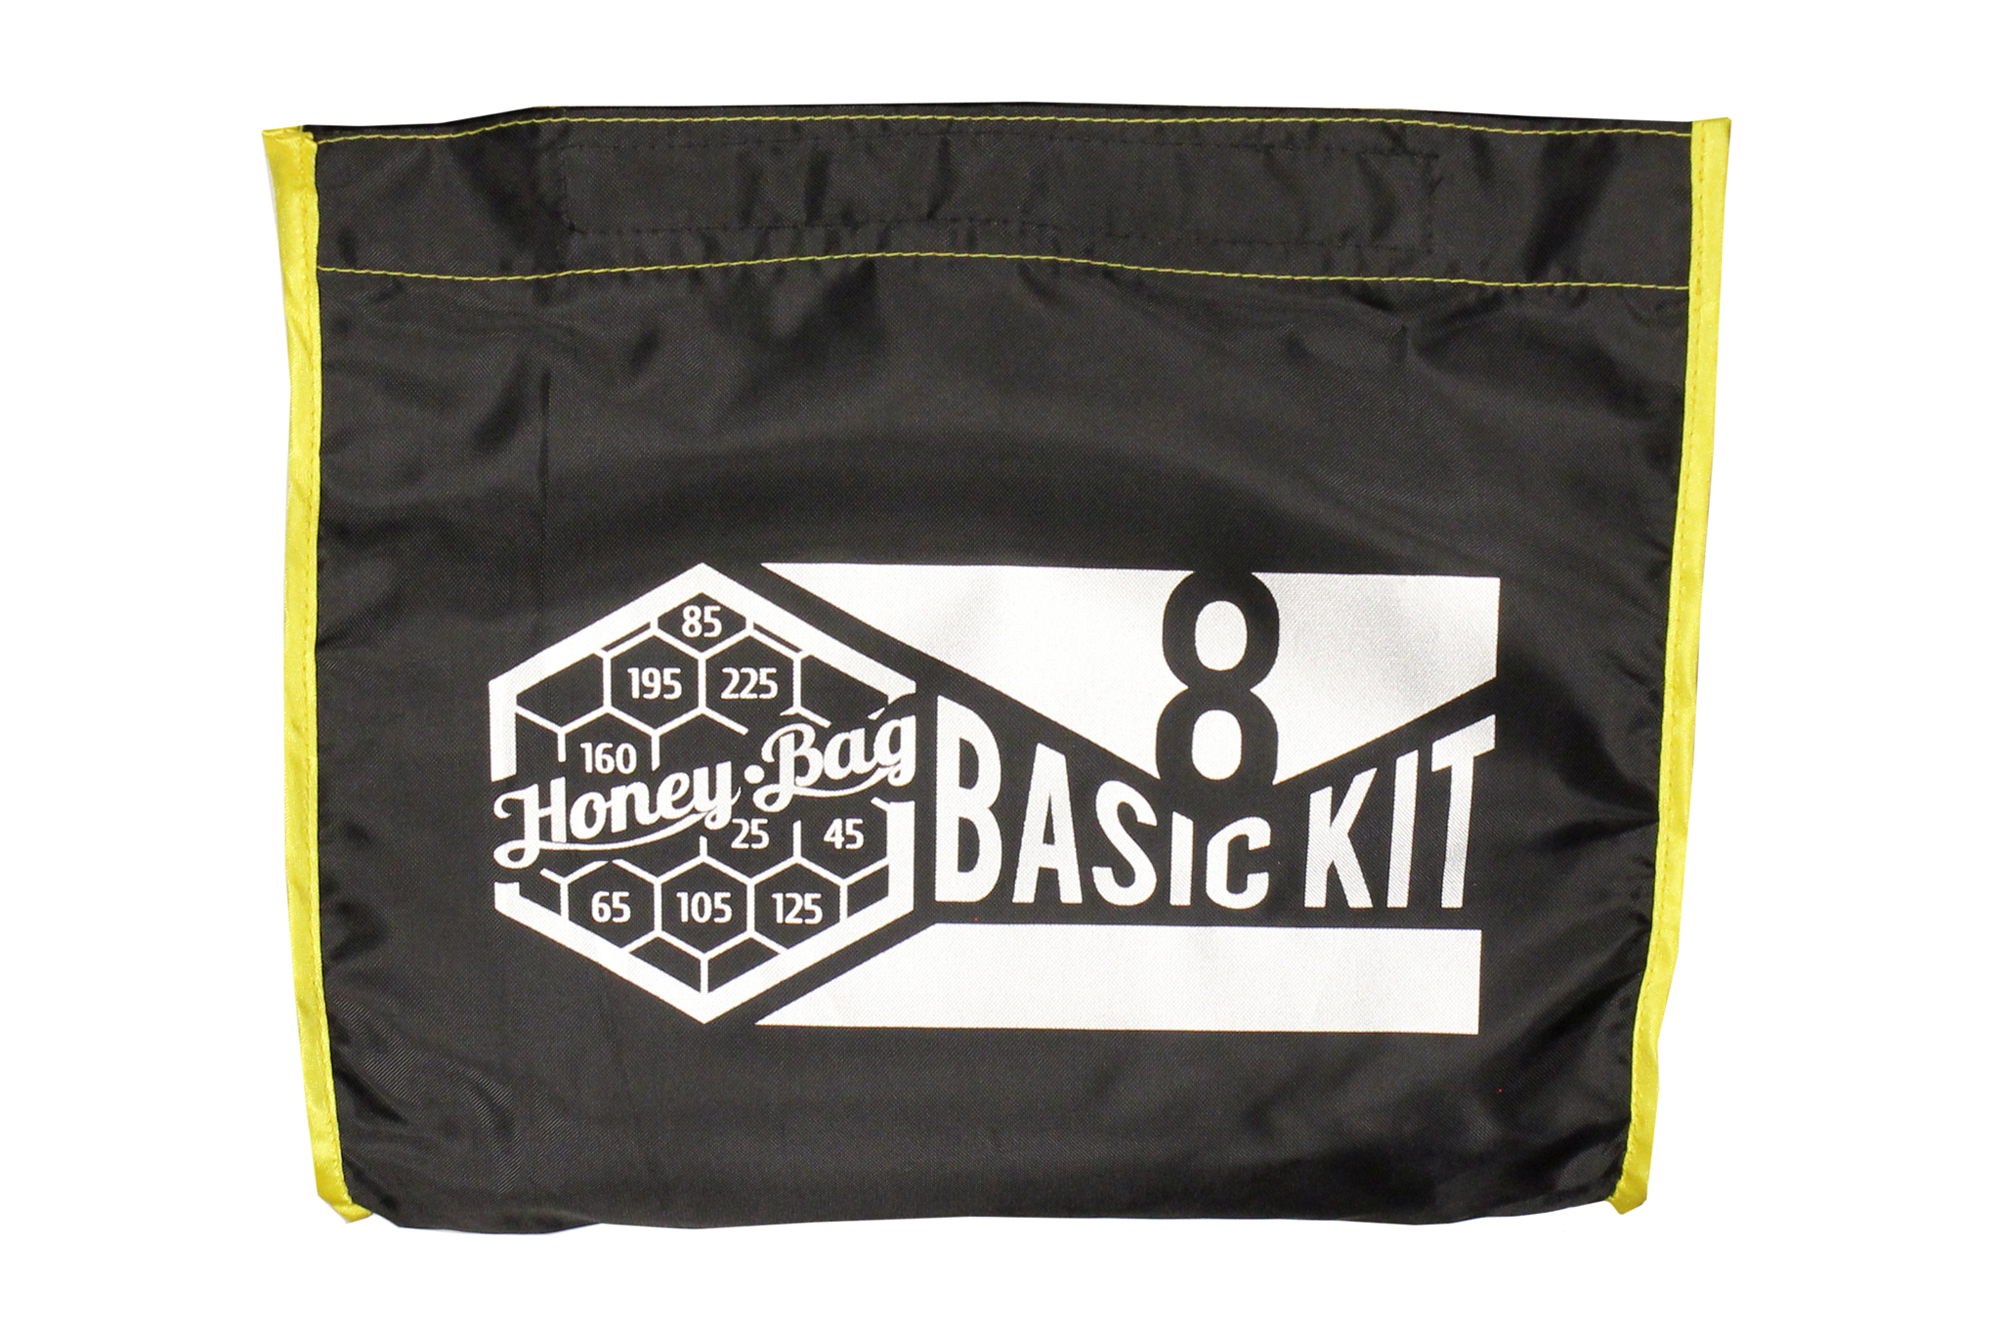 Изображение товара Honey-Bag Basic 8 Мешки для экстракции 15 л